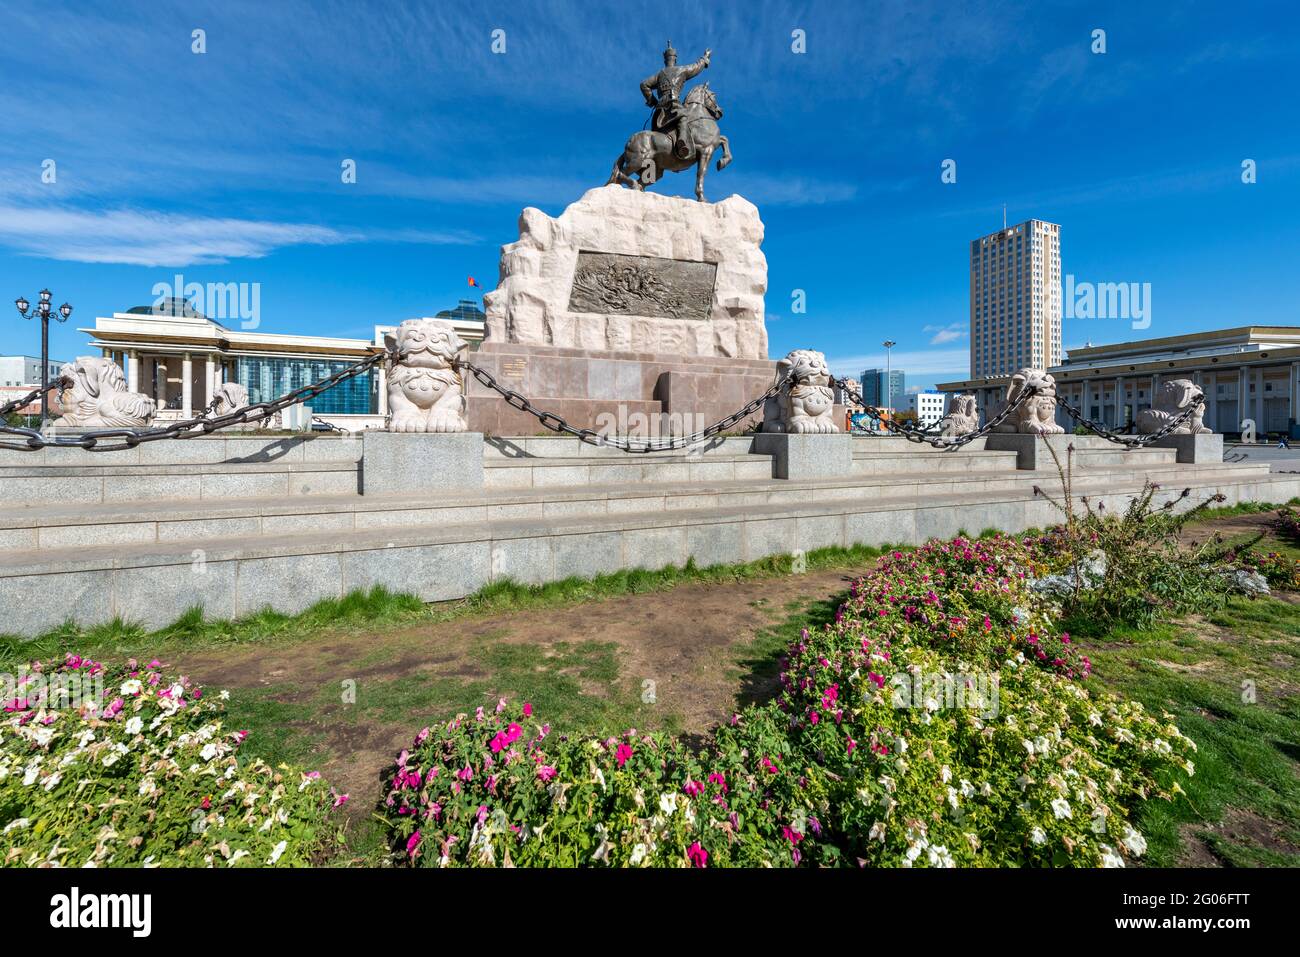 Bronzestatue von Sukhbaatar auf dem Sukhbaatar-Platz oder dem Dschingis-Khan-Platz mit dem Regierungspalast in Ulaanbaatar. Mongolei Stockfoto